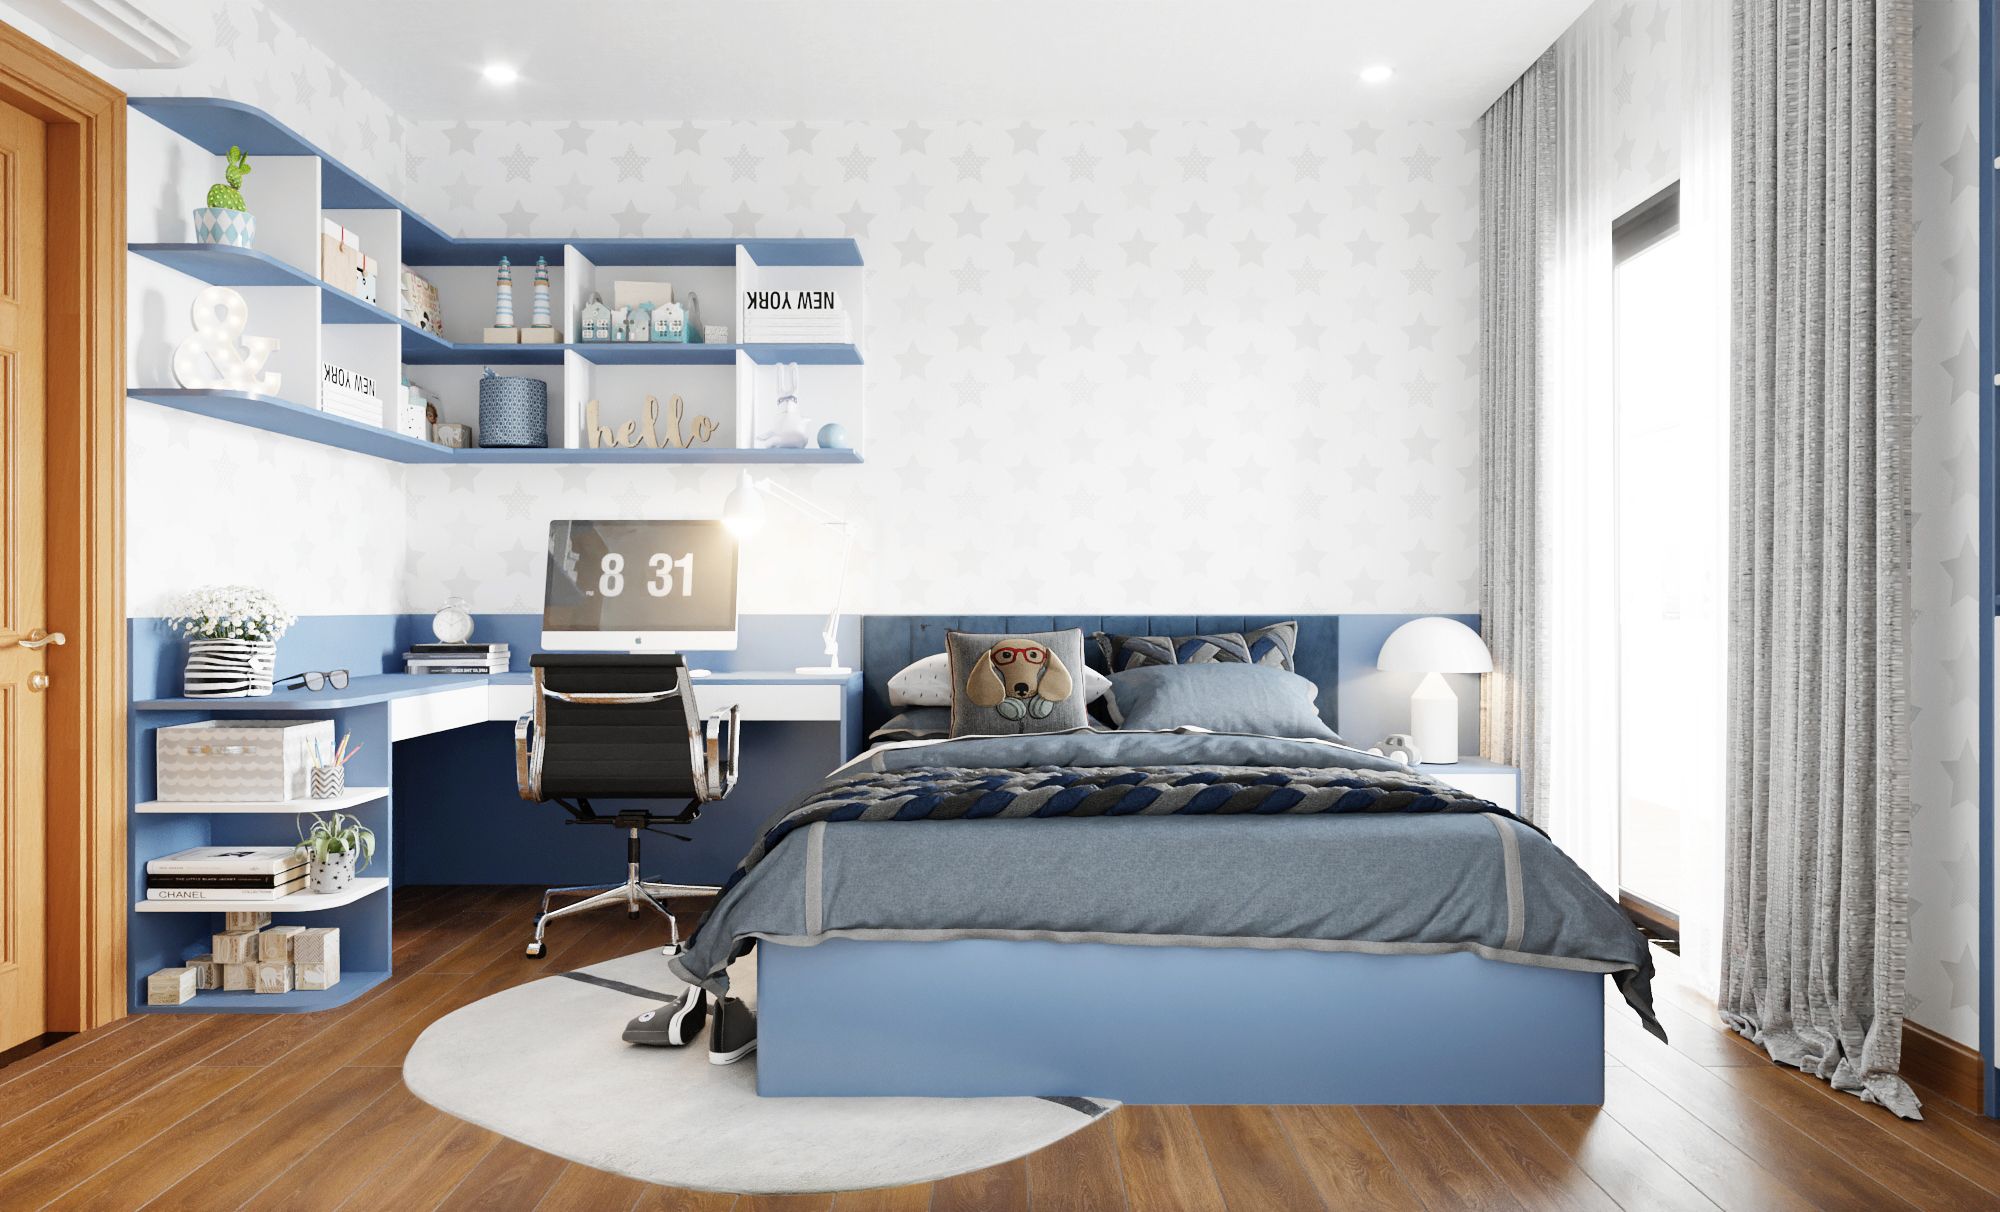 Phòng ngủ màu xanh dương tạo nên sự bình yên và thư thái